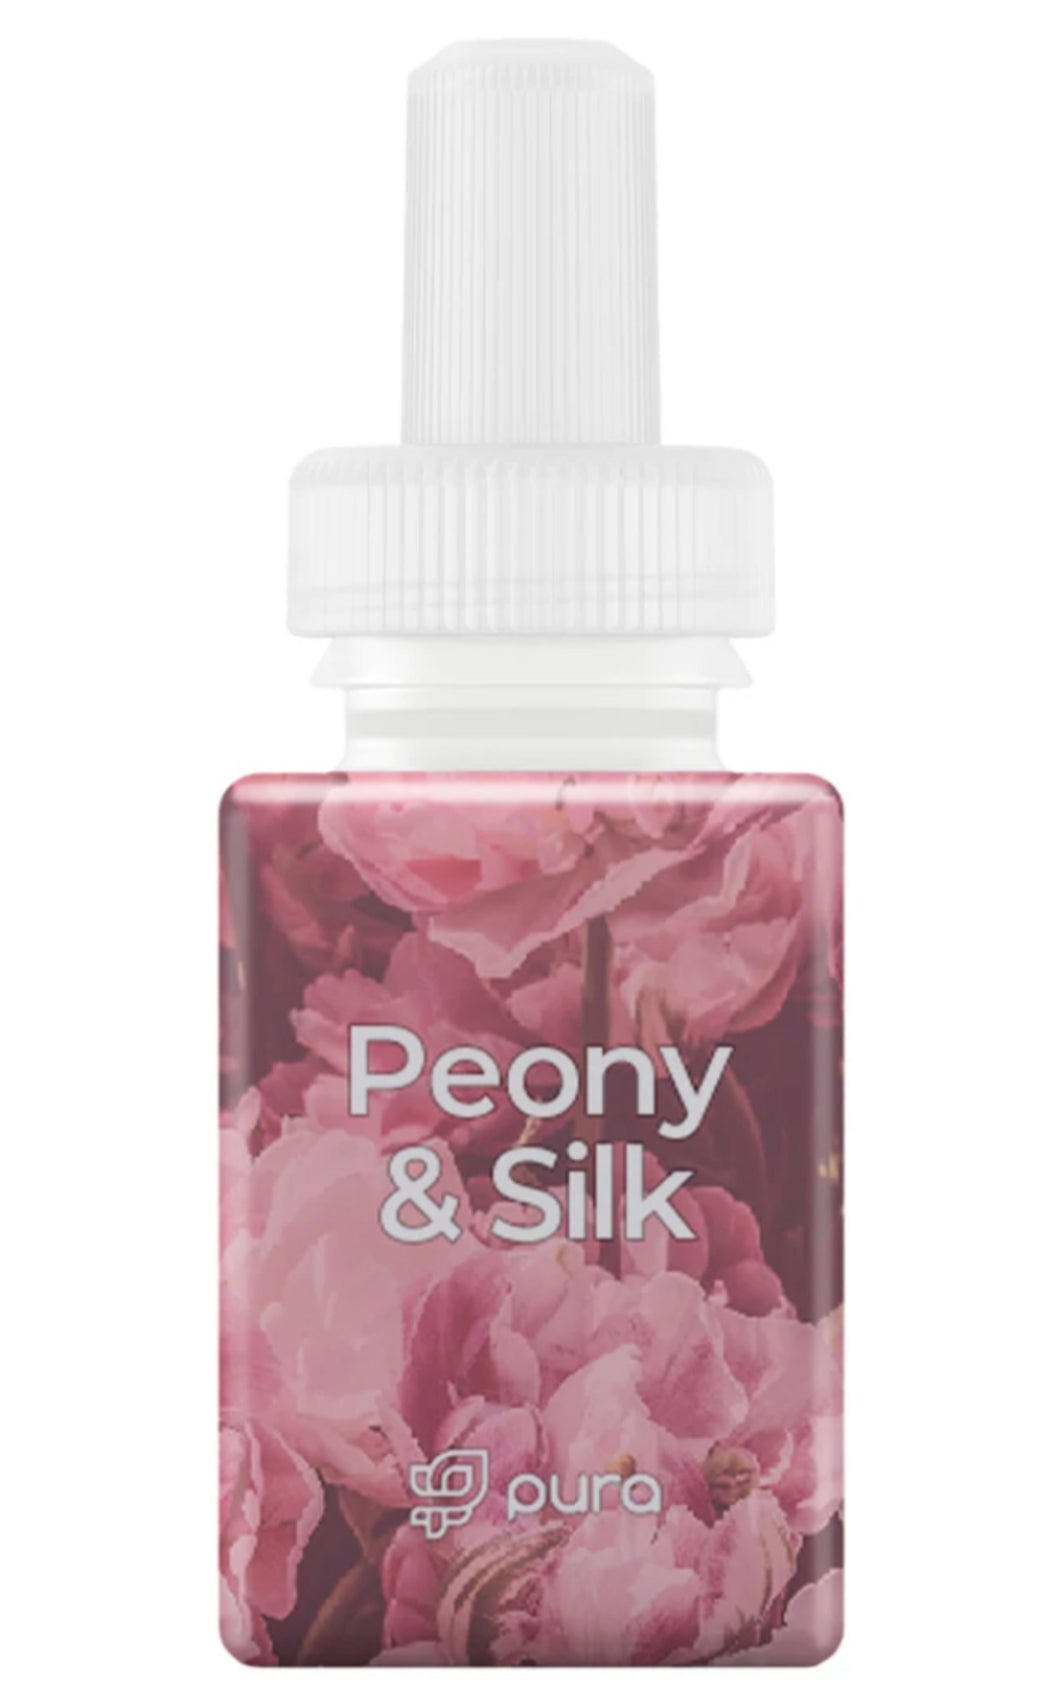 Peony & Silk Pura Scent